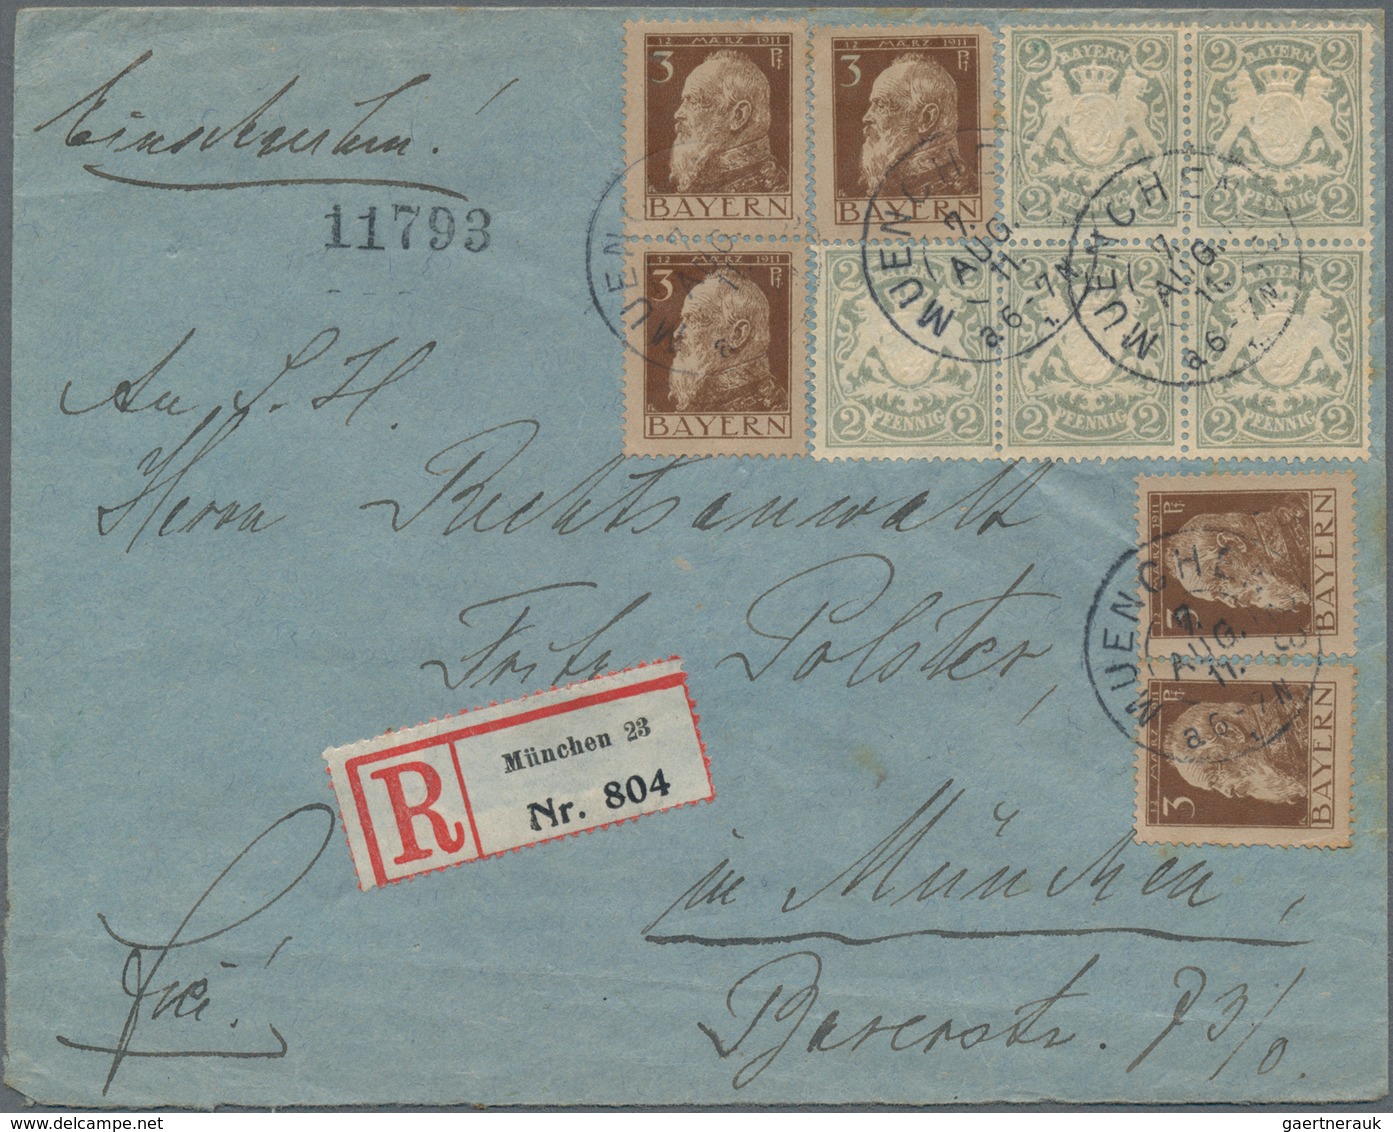 Bayern - Marken und Briefe: 1804/1920, vielseitige Partie von ca. 100 Briefen und Karten ab etwas Vo